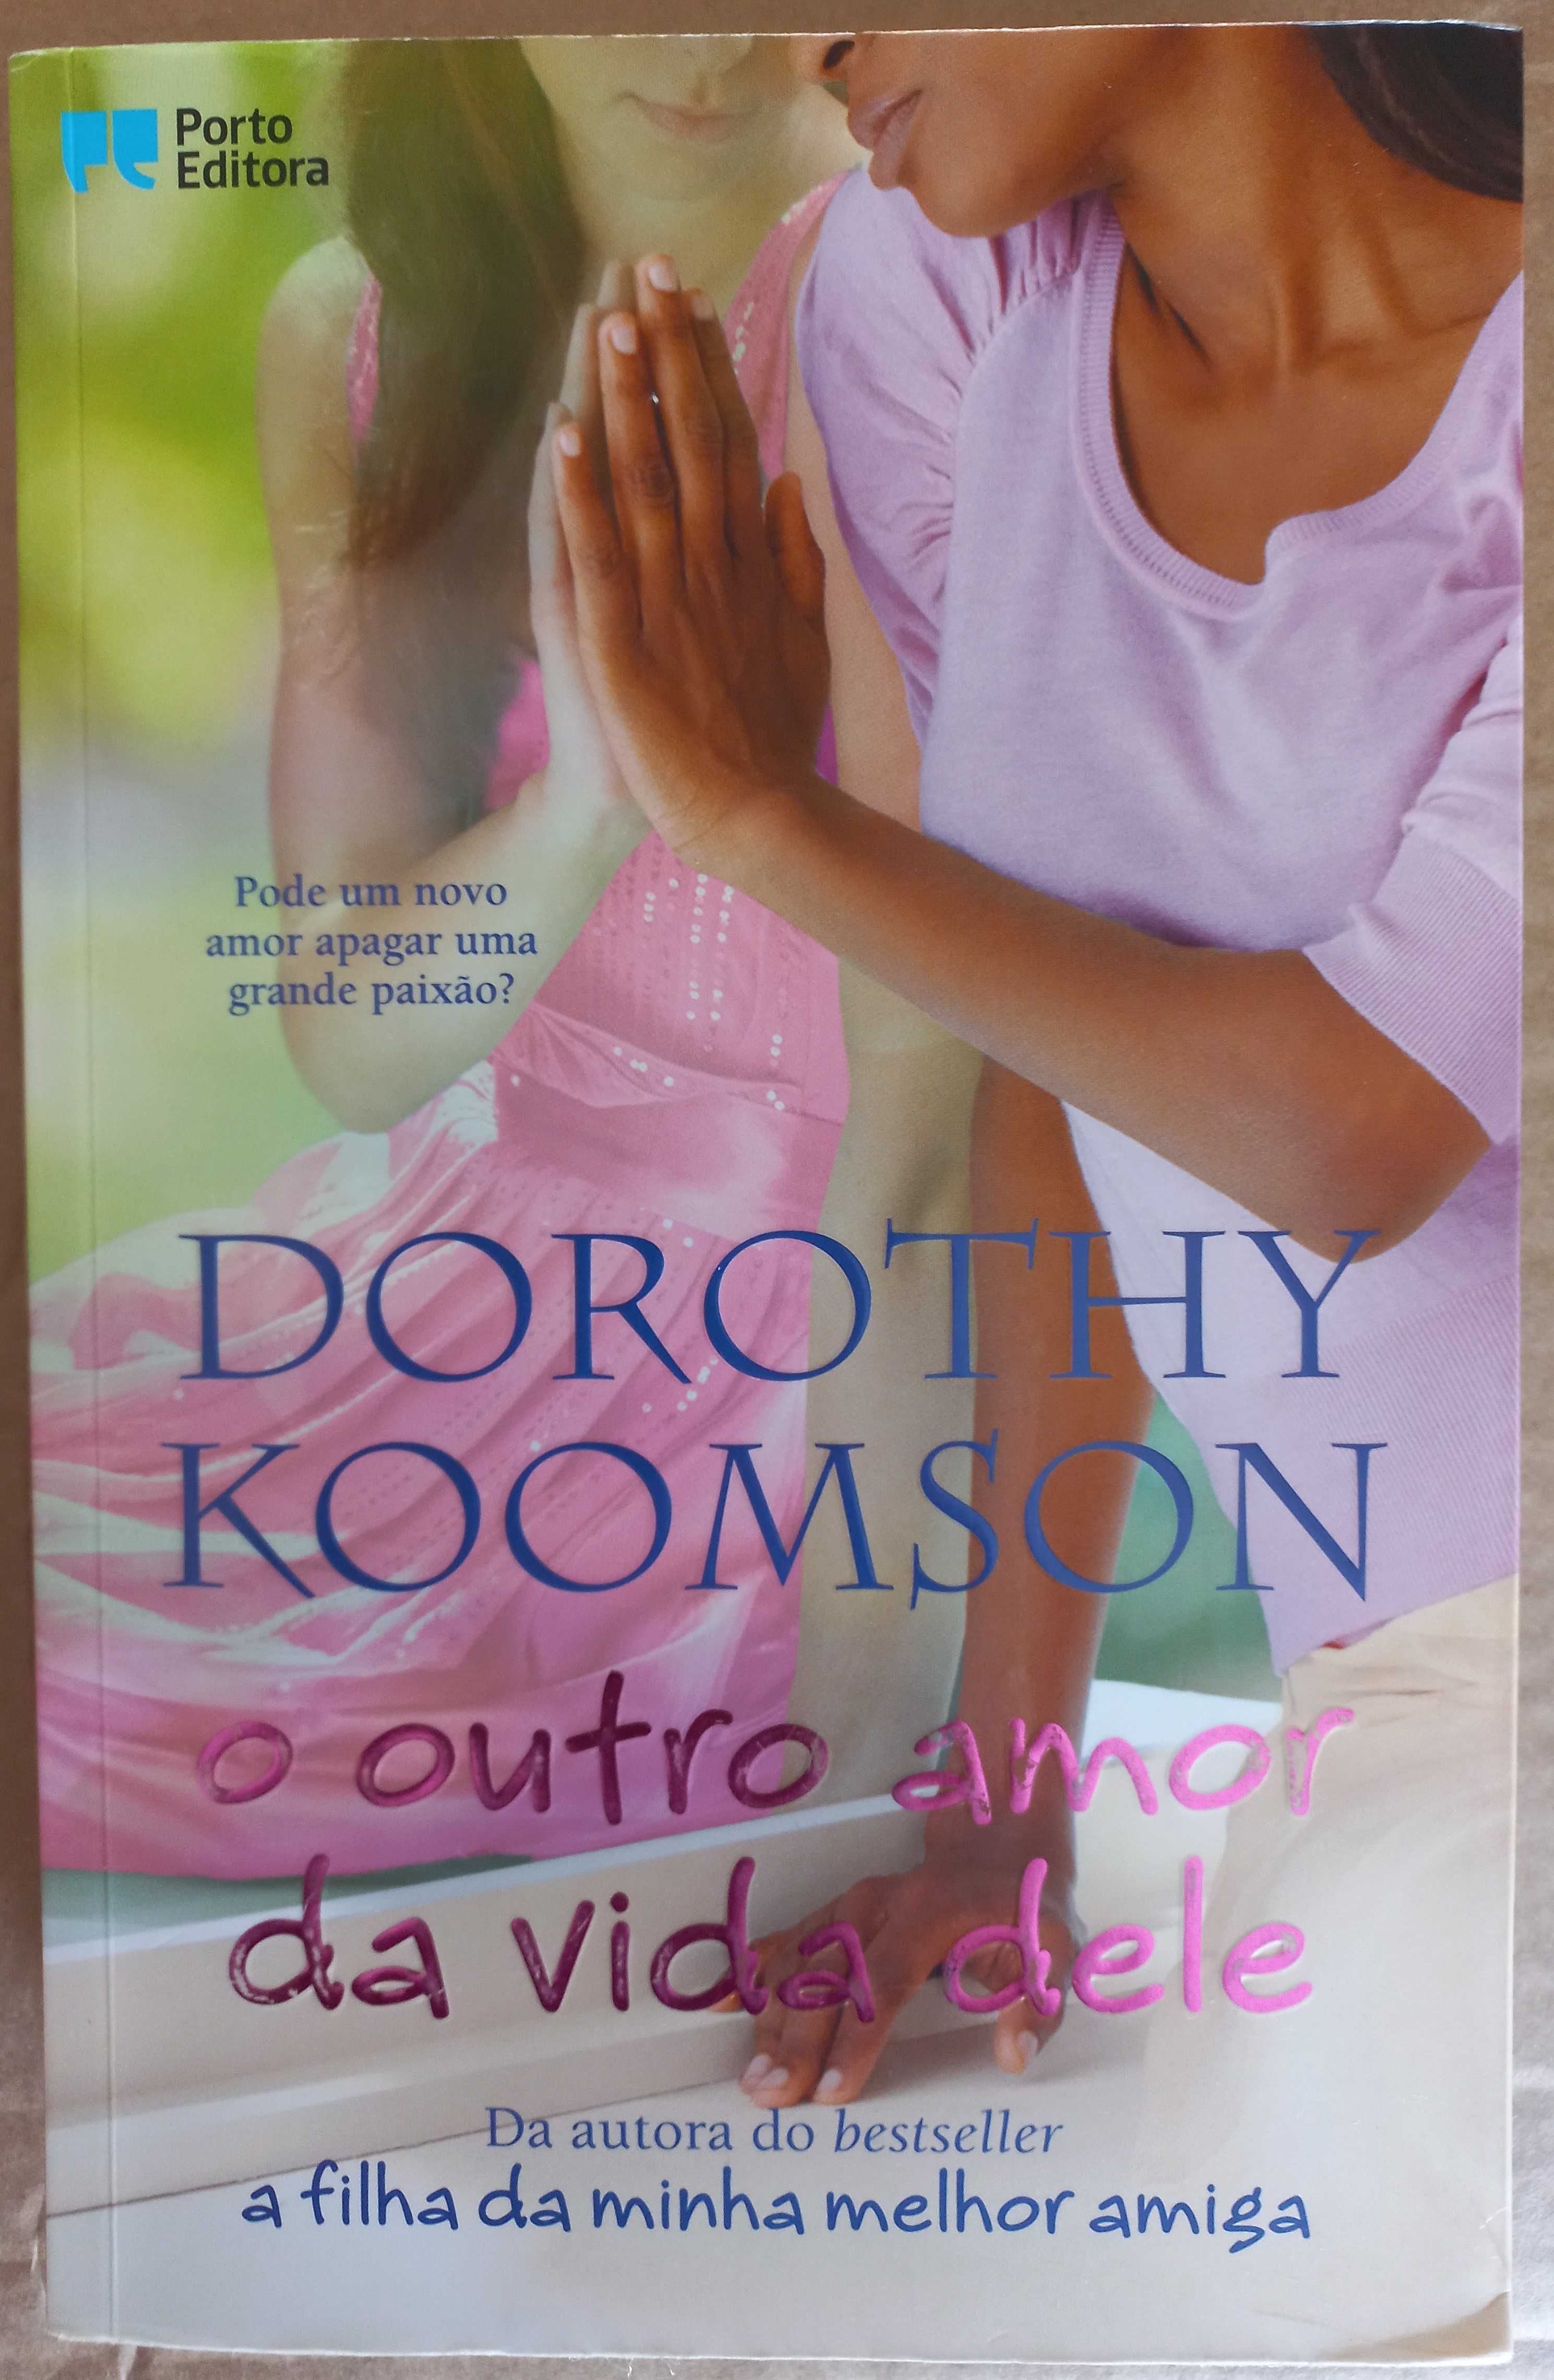 O outro amor da vida dele de Dorothy Koomson